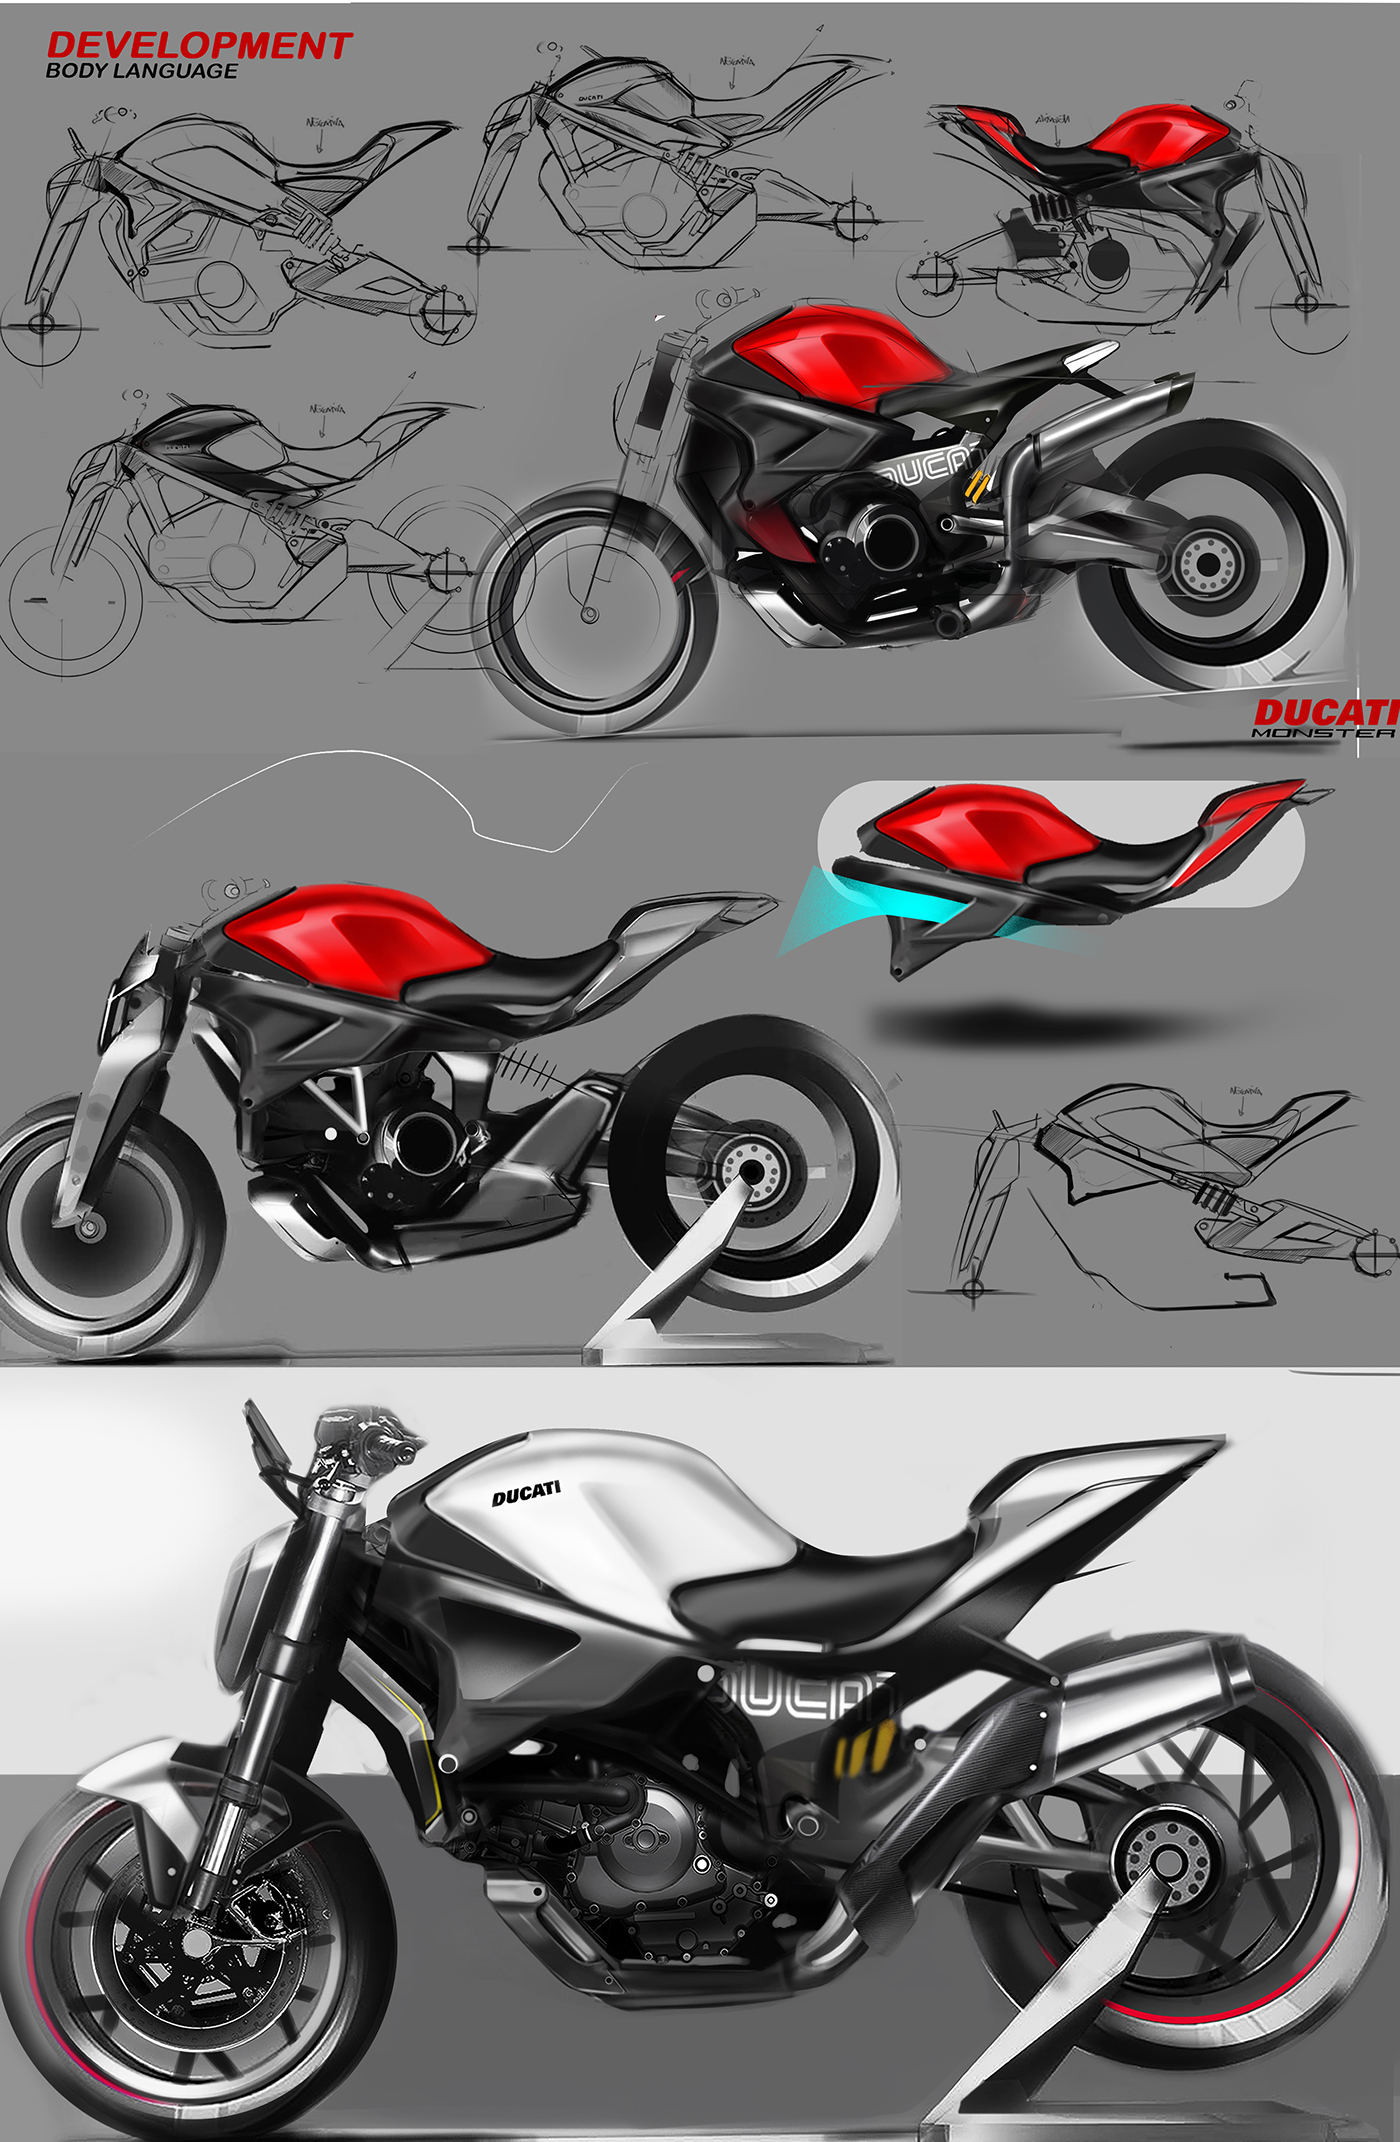 Ducati monster design marcello basilio sketch